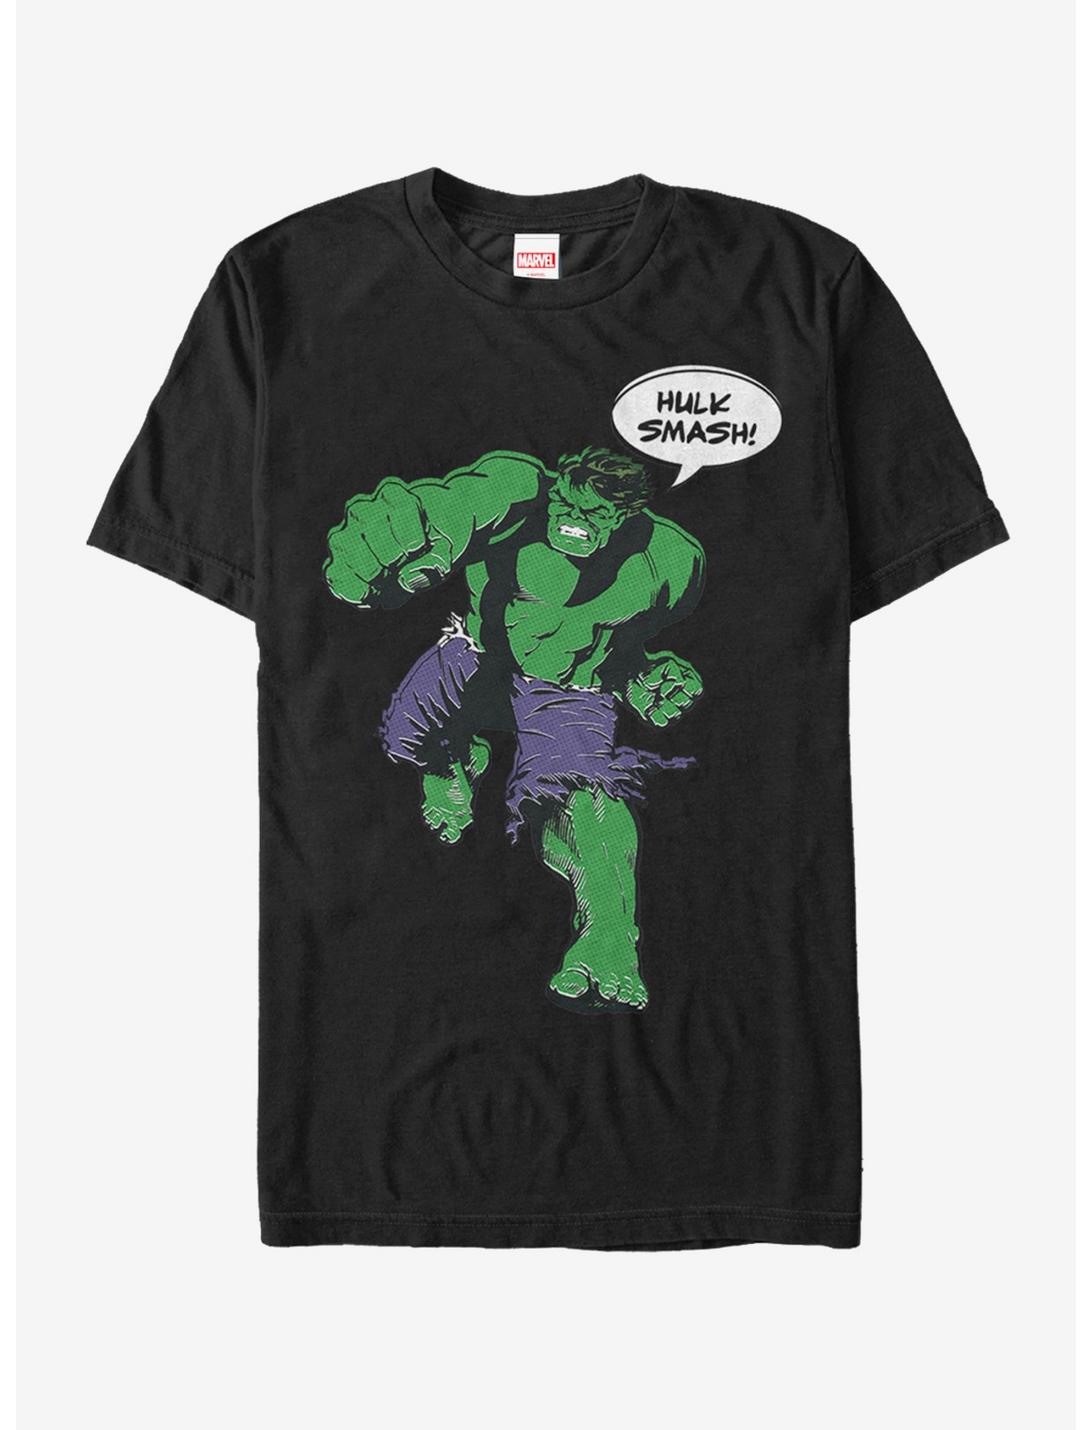 Plus Size Marvel Hulk Smash Classic T-Shirt, BLACK, hi-res